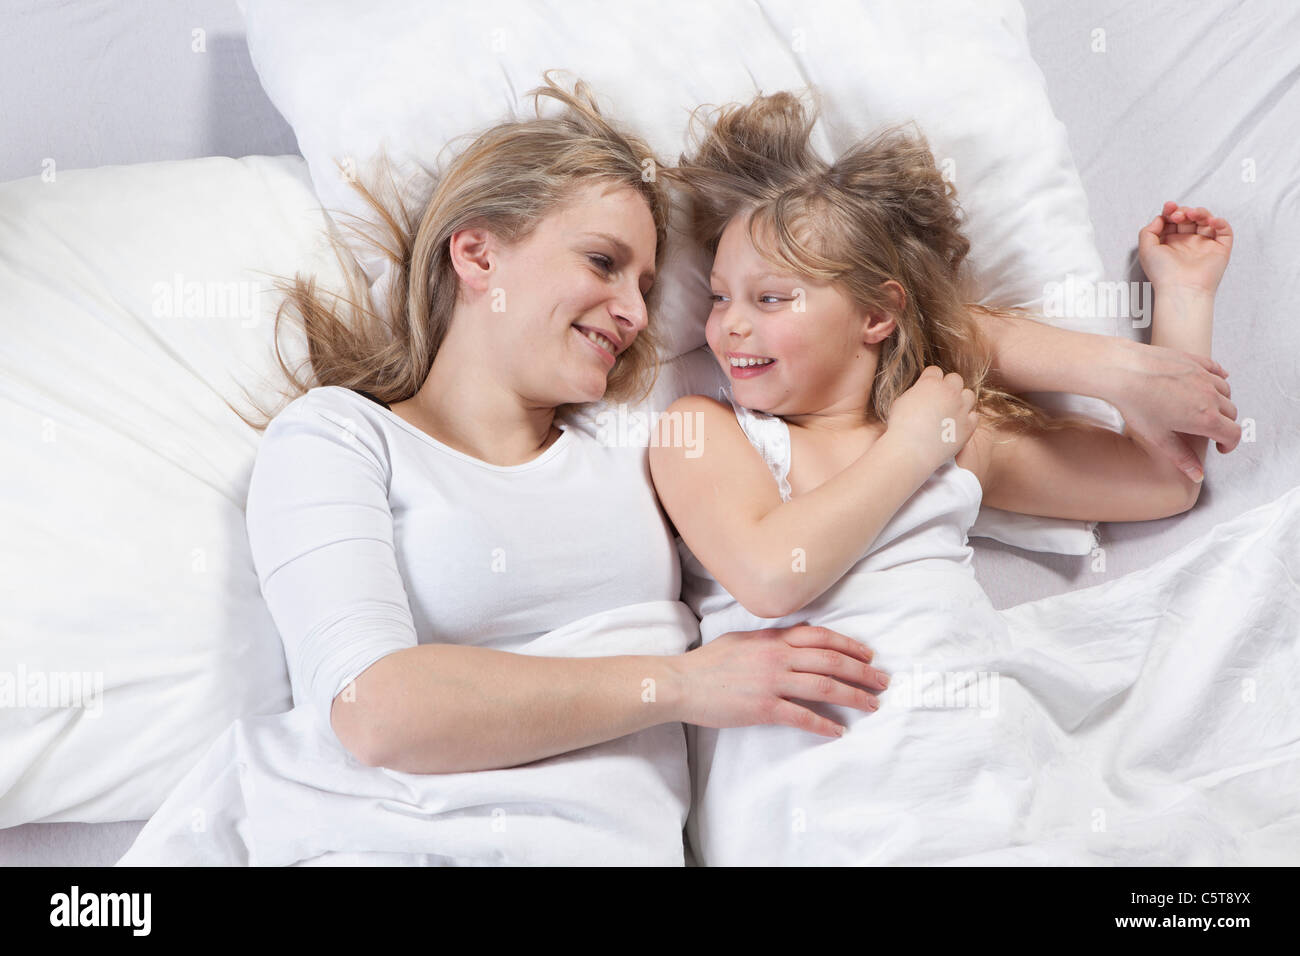 Deutschland, Bayern, München, Mutter und Tochter am Bett liegen Stockfoto